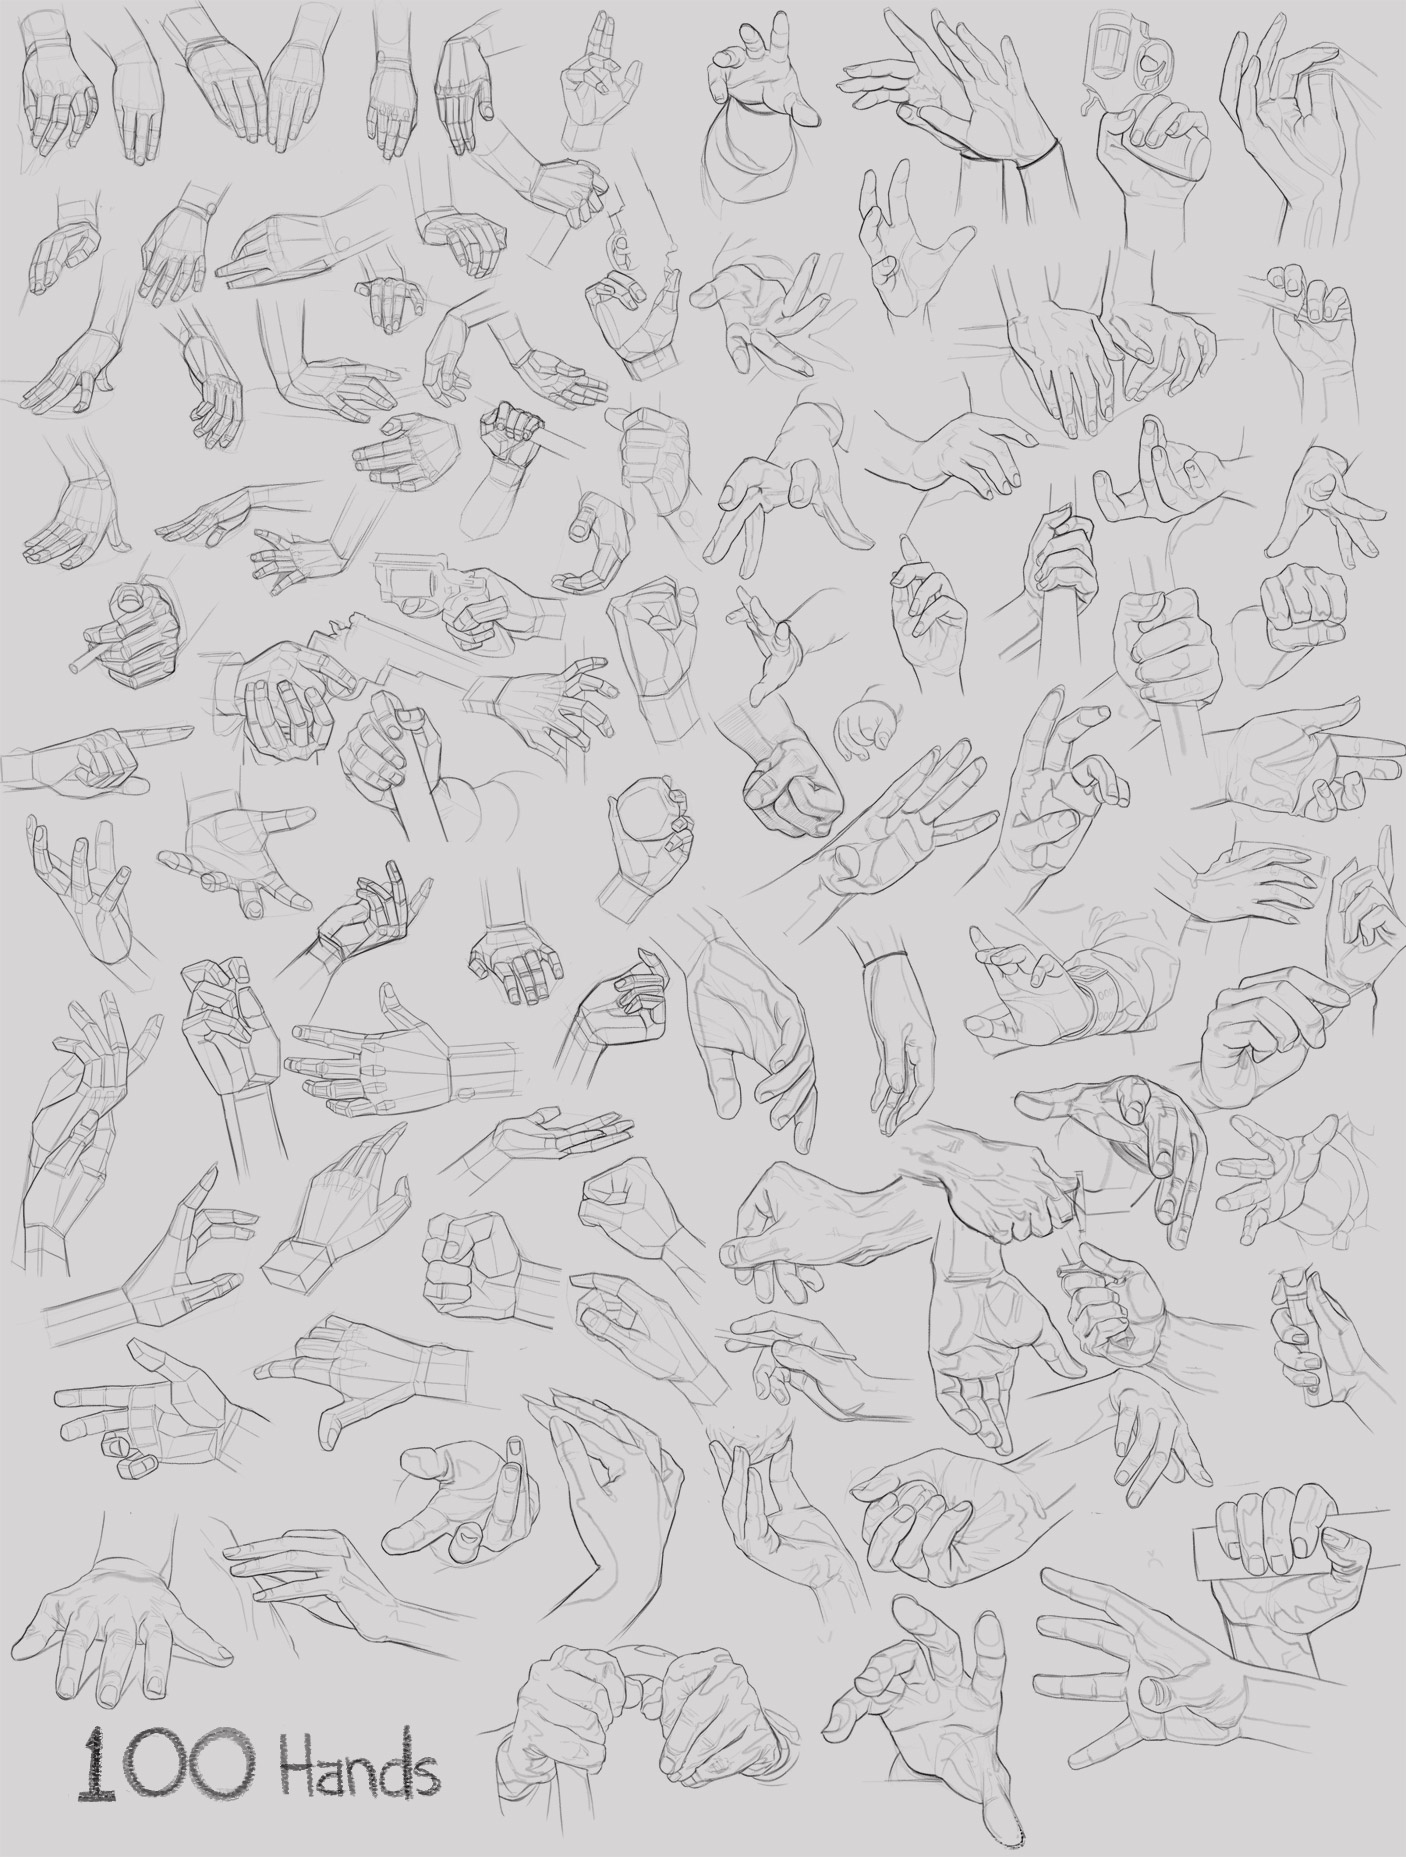 Studies of 100 hands.